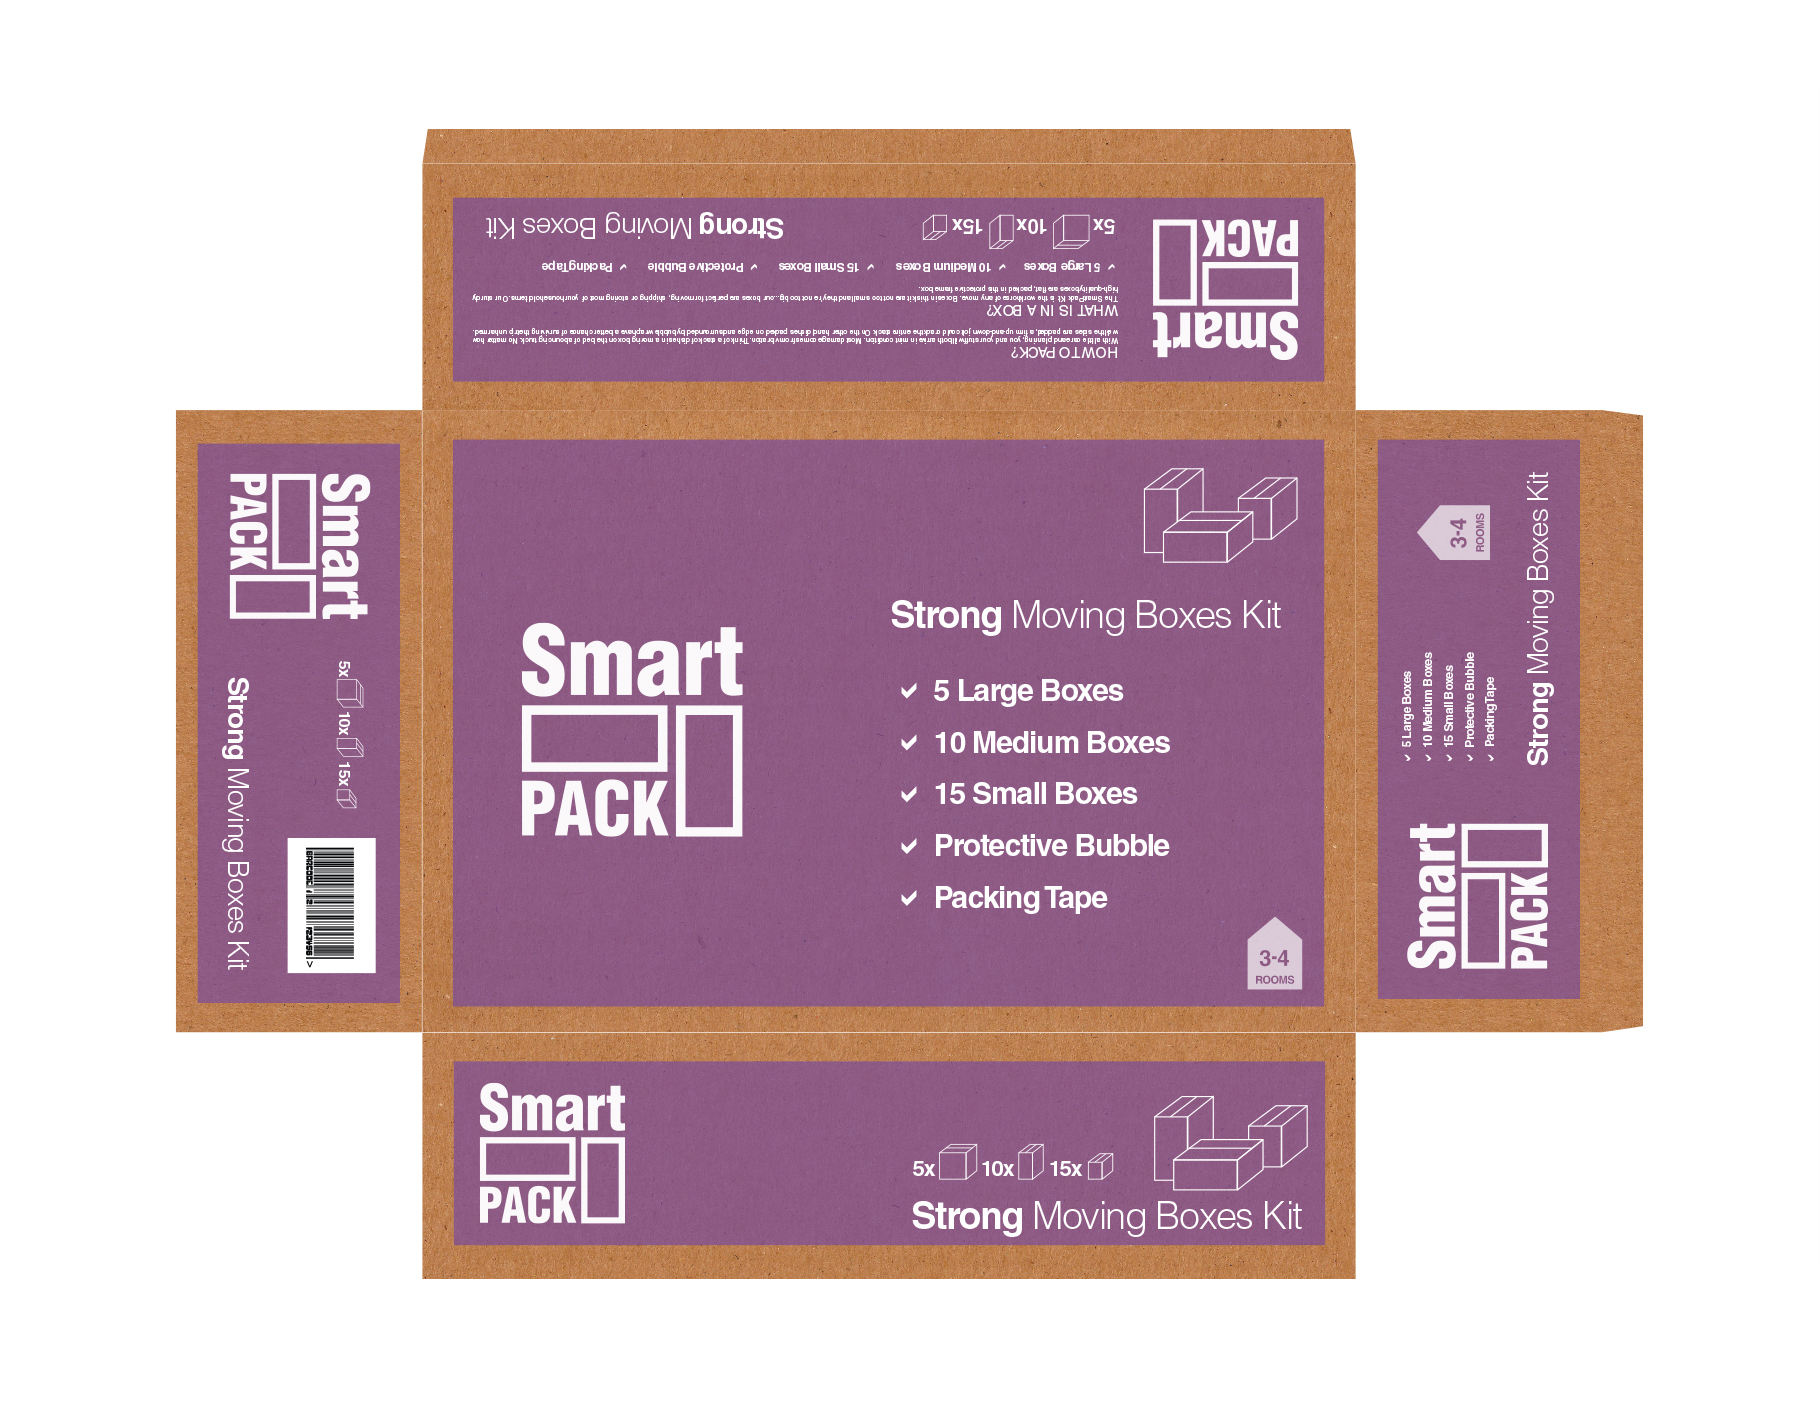 Industrial Packaging Design - Smart Pack